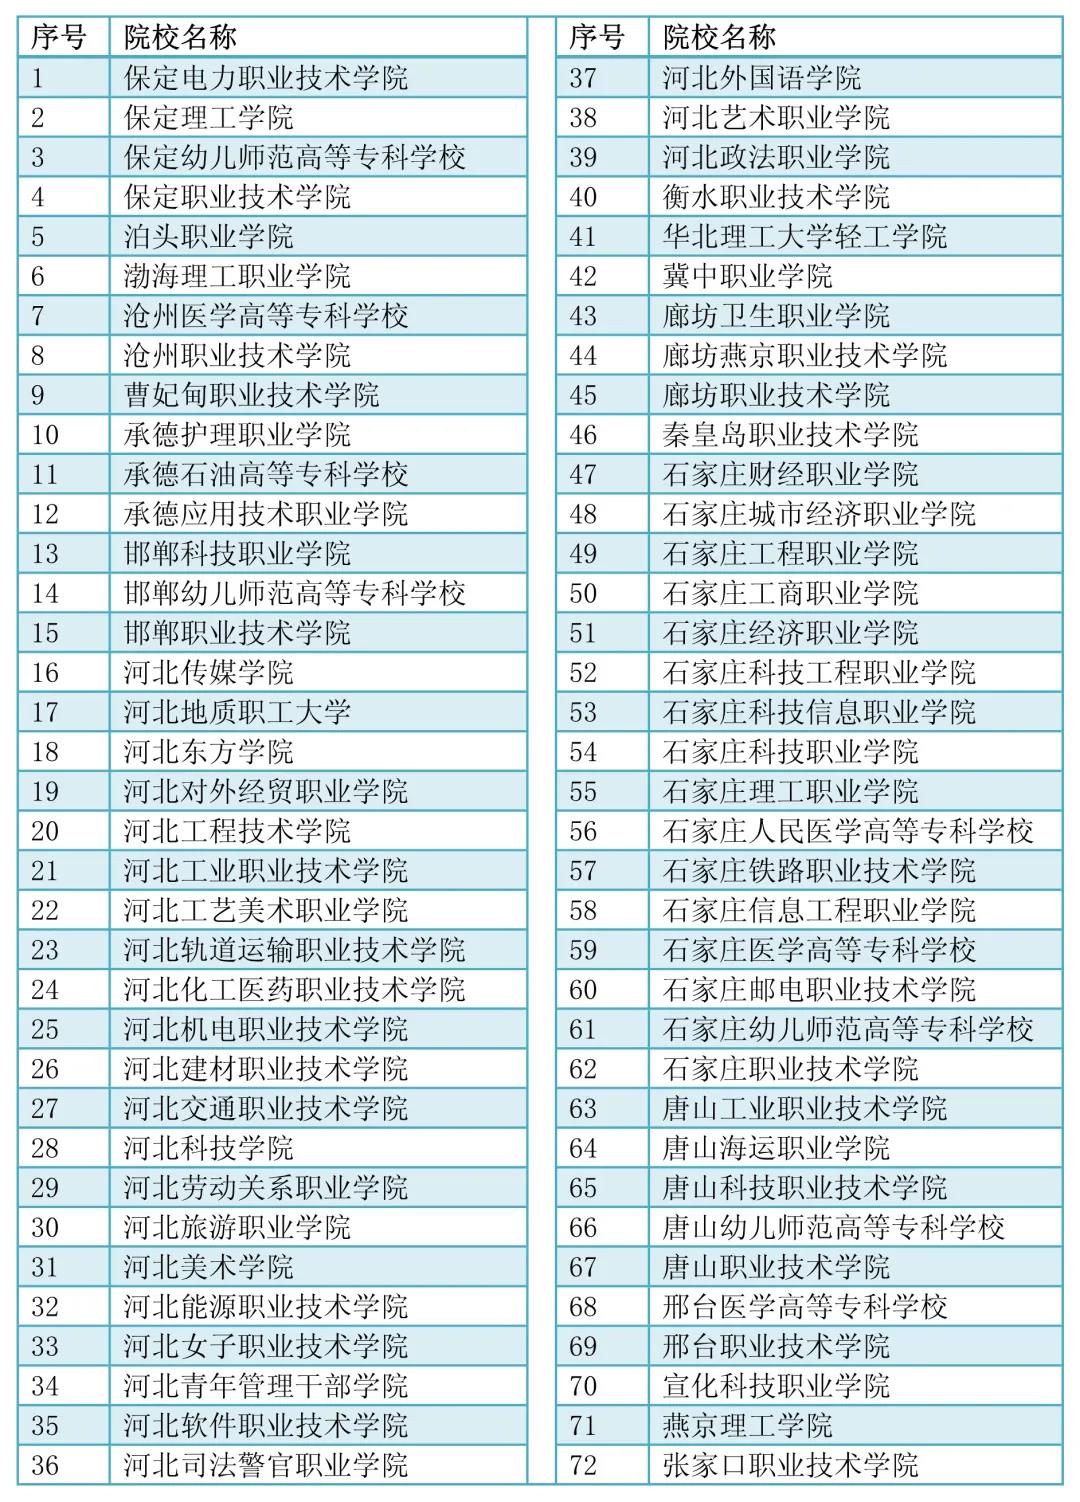 2021年高职单招学校名单.jpg